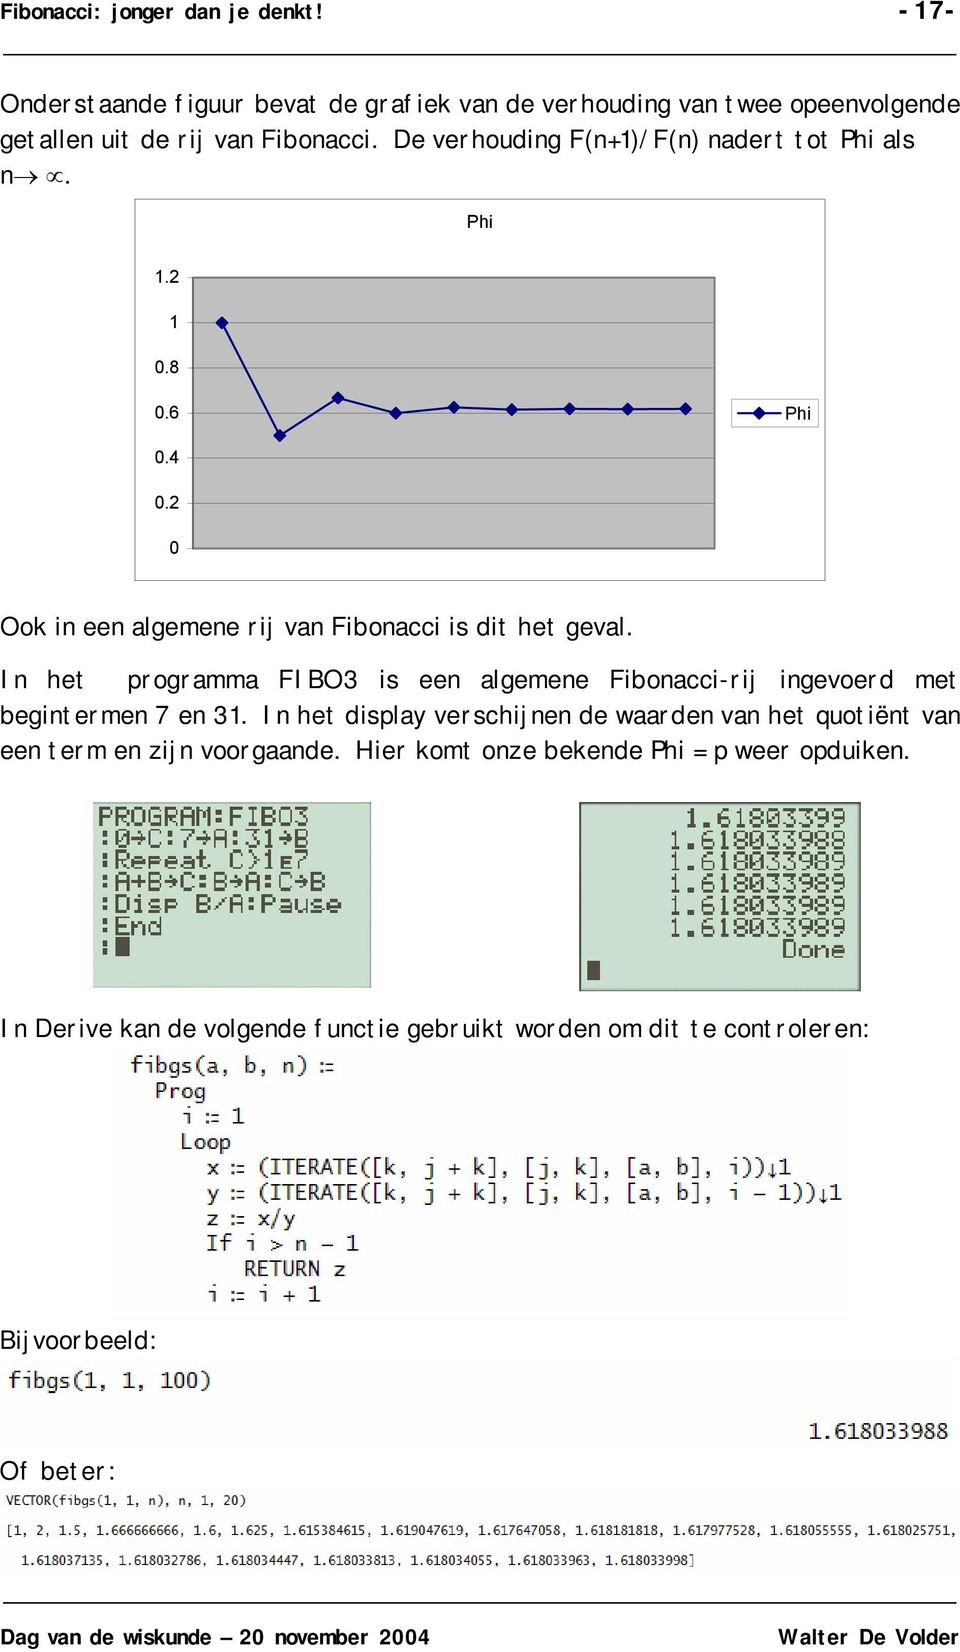 I het programma FIBO3 is ee algemee Fiboacci-rij igevoerd met begiterme 7 e 3.